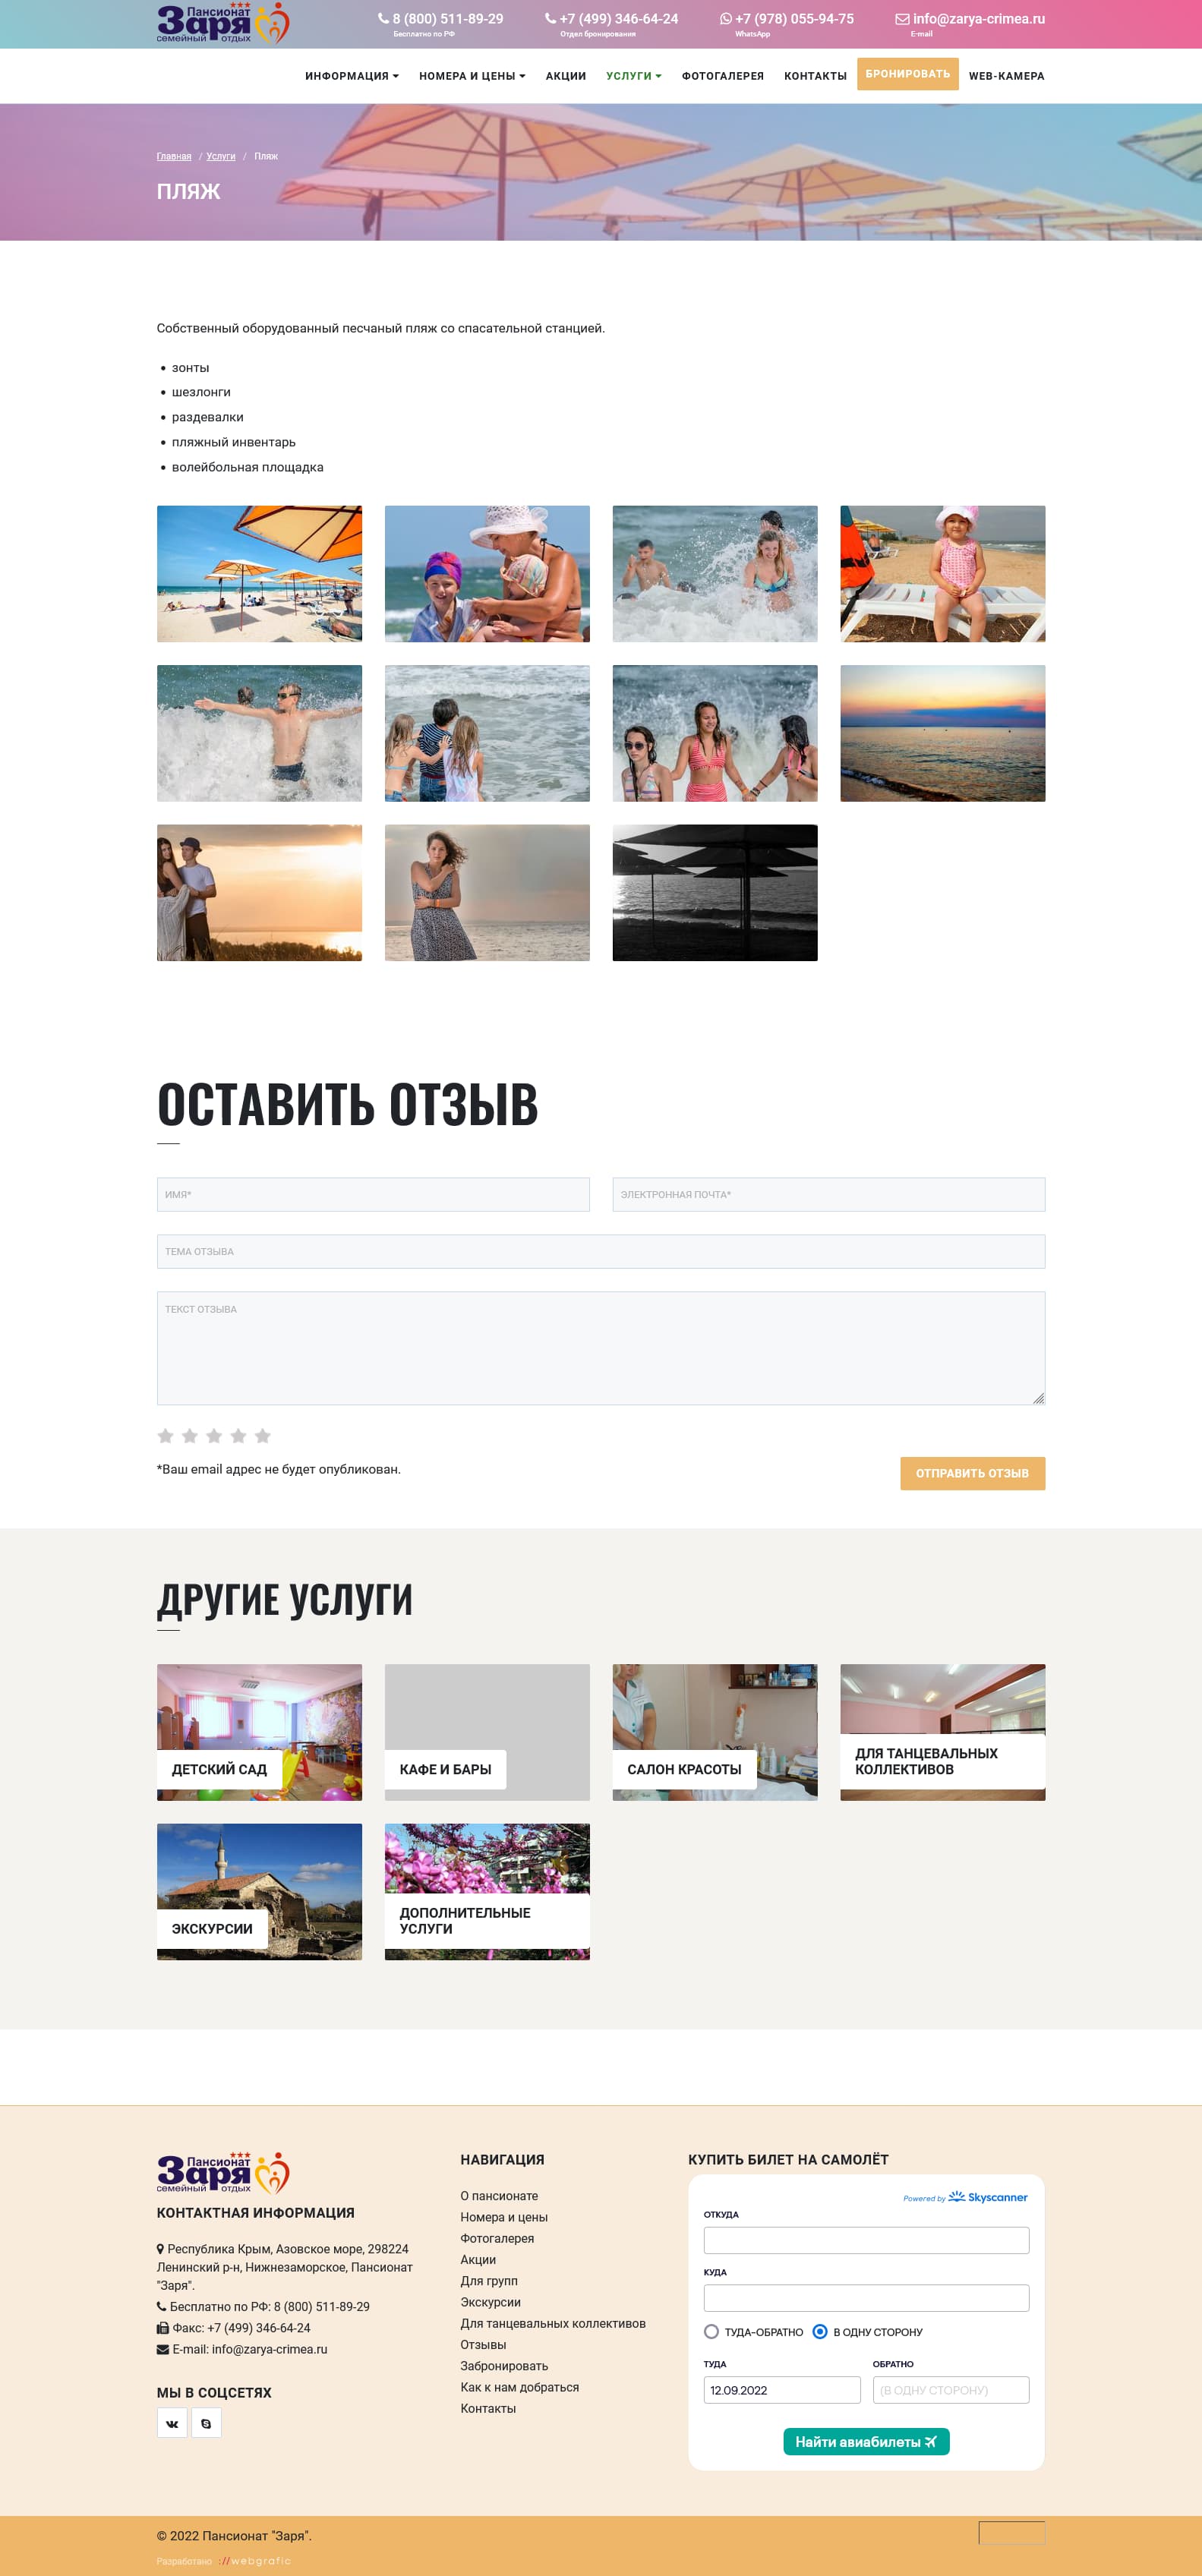 Разработка и техподдержка корпоративного сайта пансионата "Заря" на Азовском море